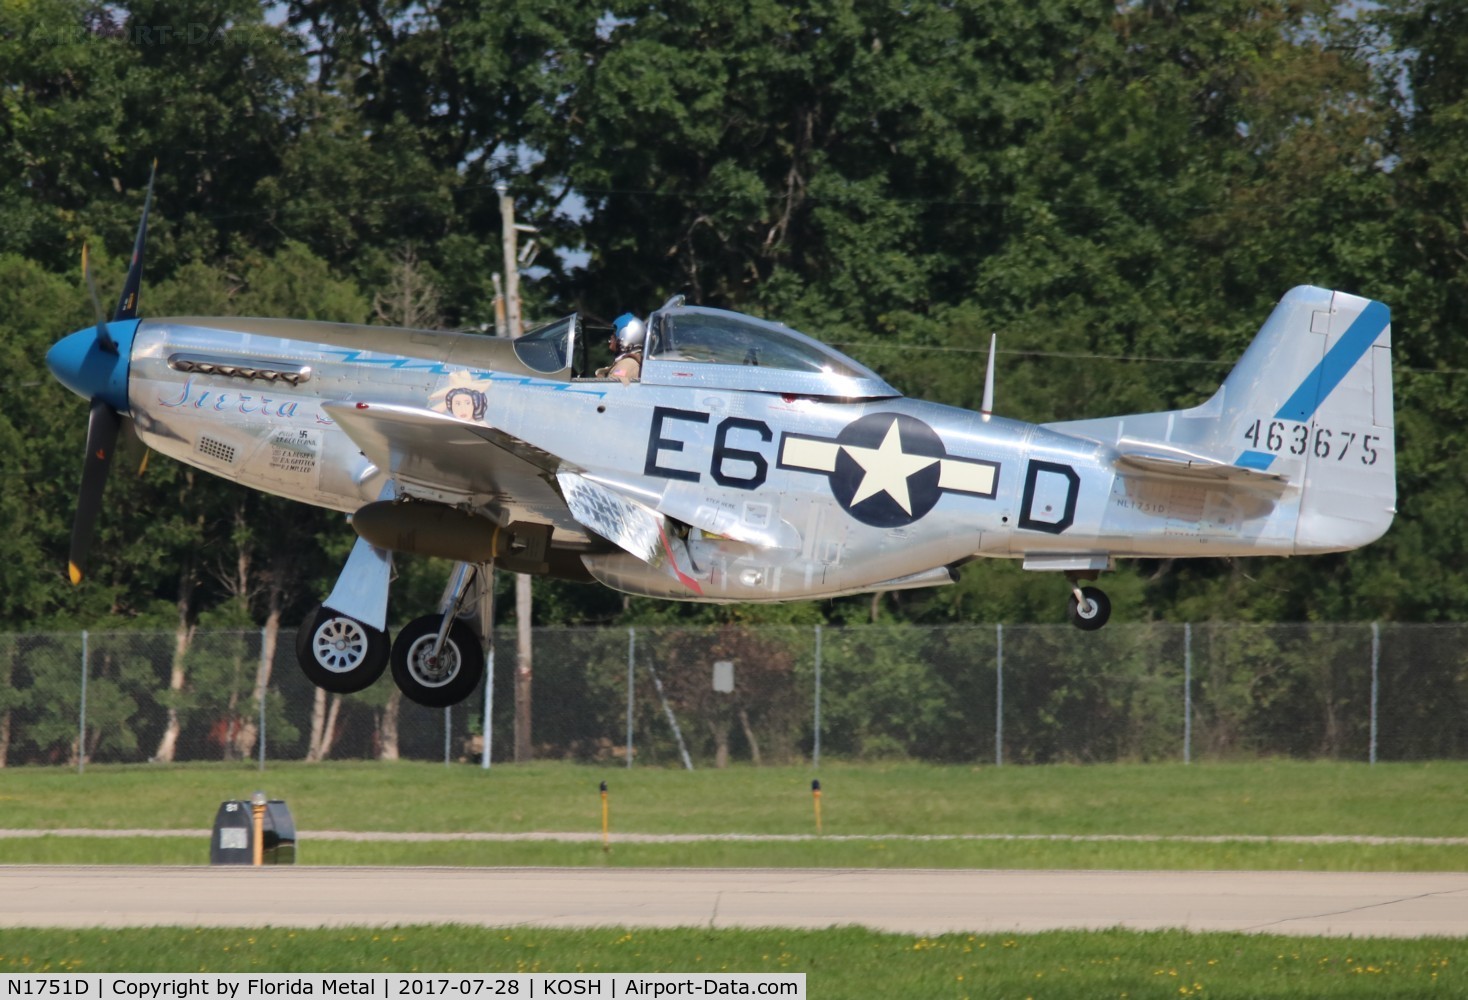 N1751D, 1944 North American P-51D Mustang C/N 122-31401 (44-63675), Sierra Sue II